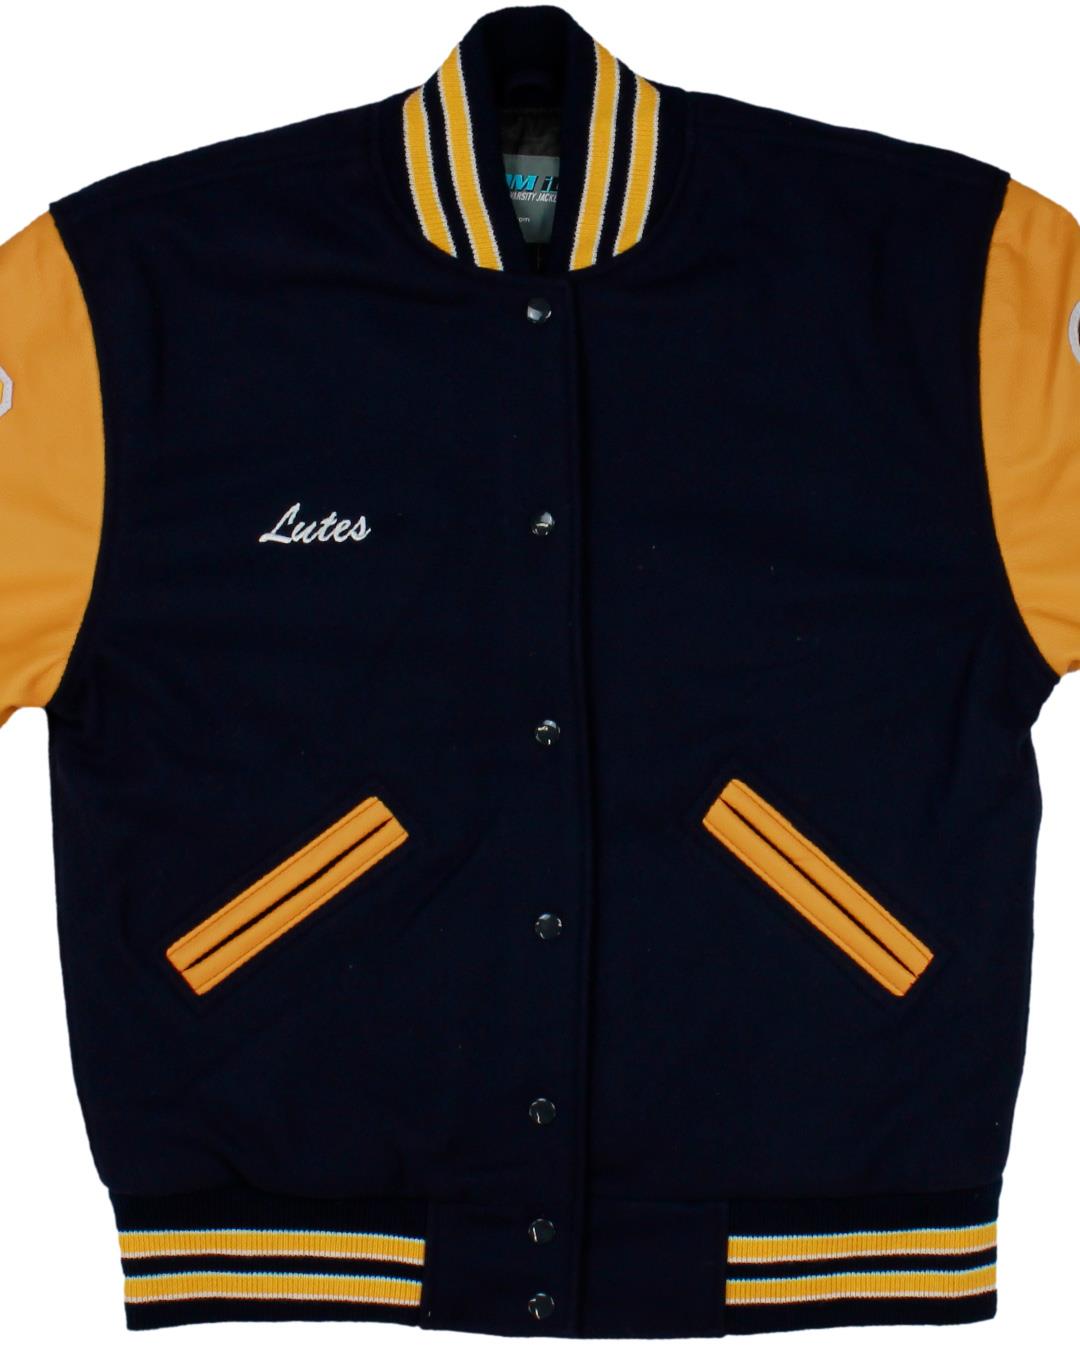 Fresta Valley High School Letterman Jacket, Marshall VA - Front